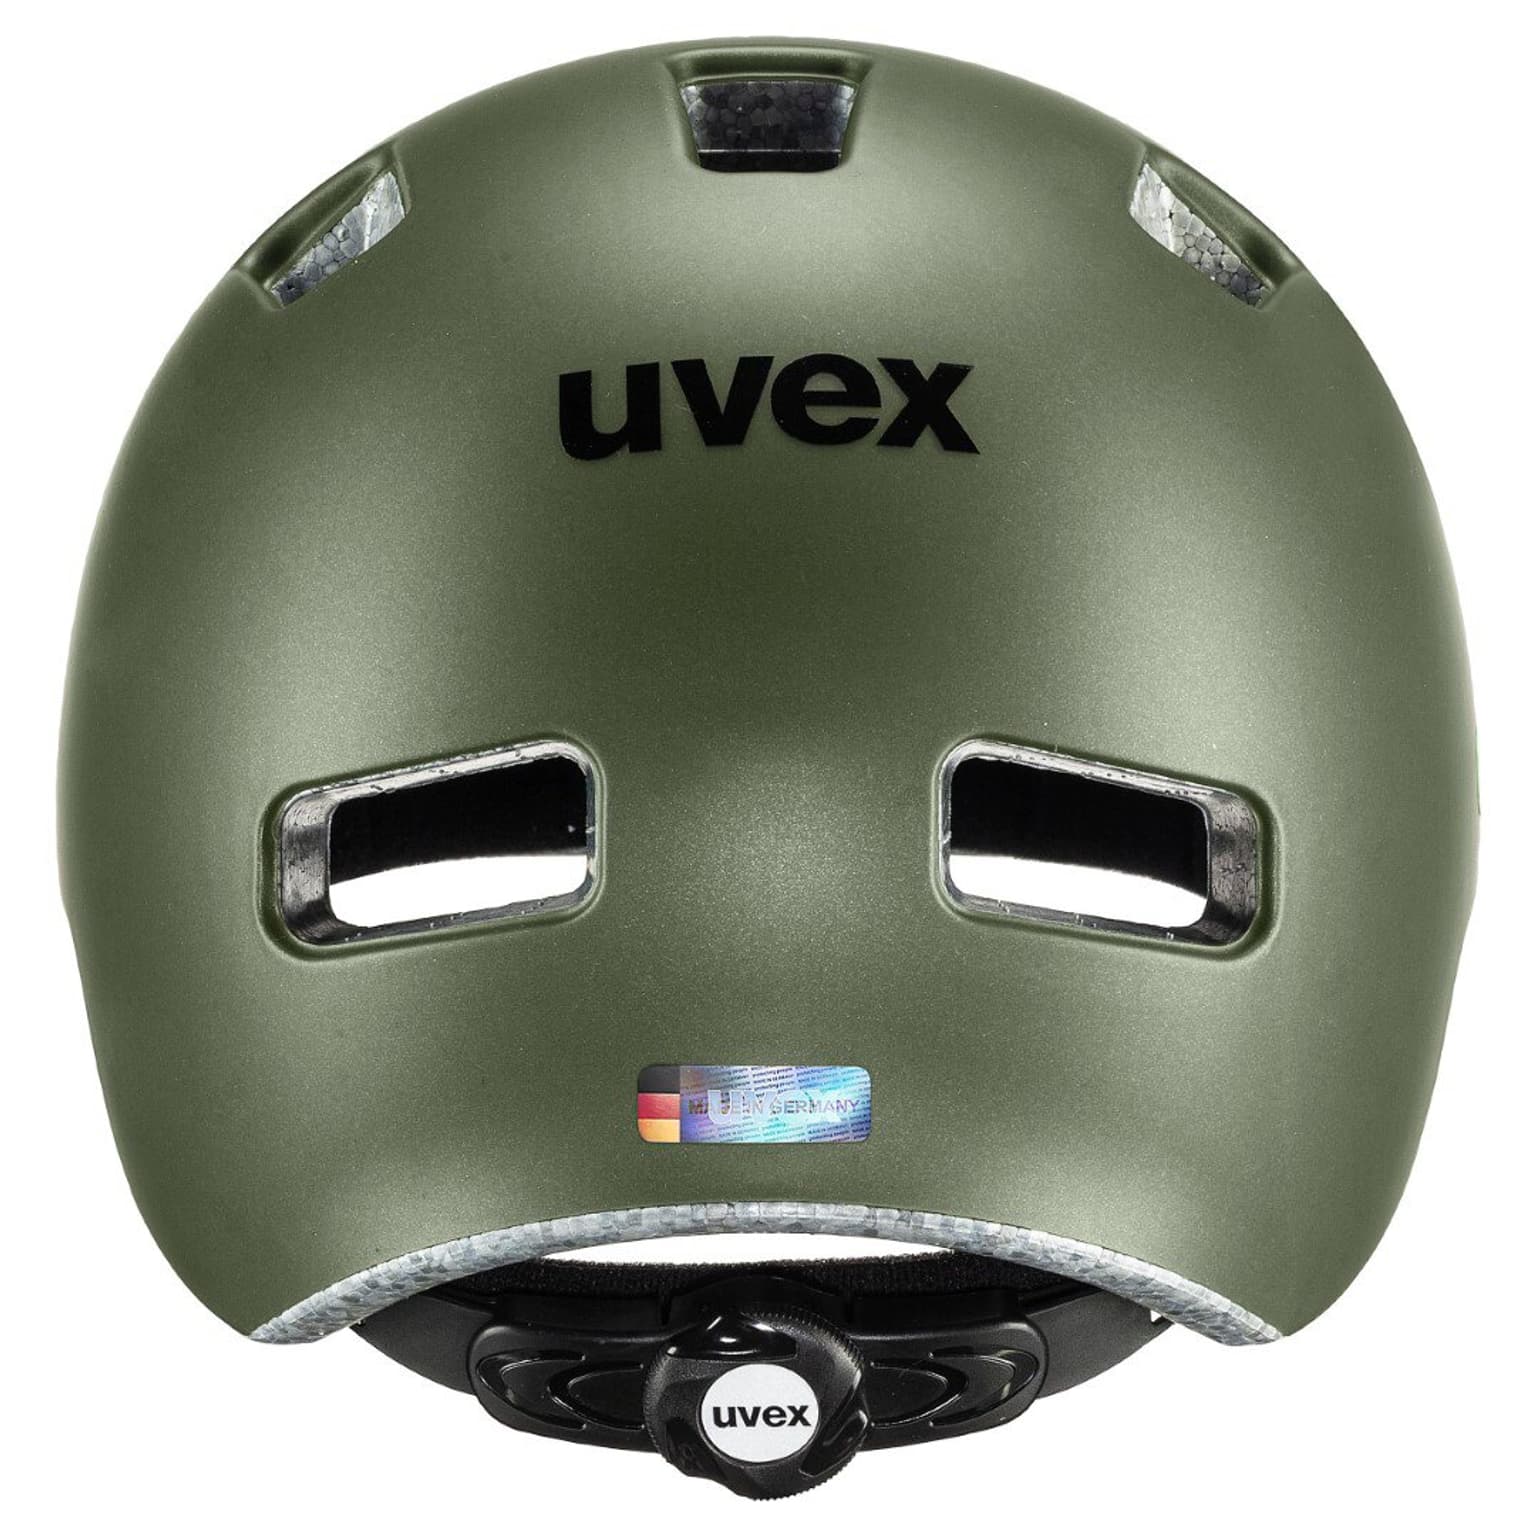 Uvex Uvex hlmt 4 cc Velohelm olive 5